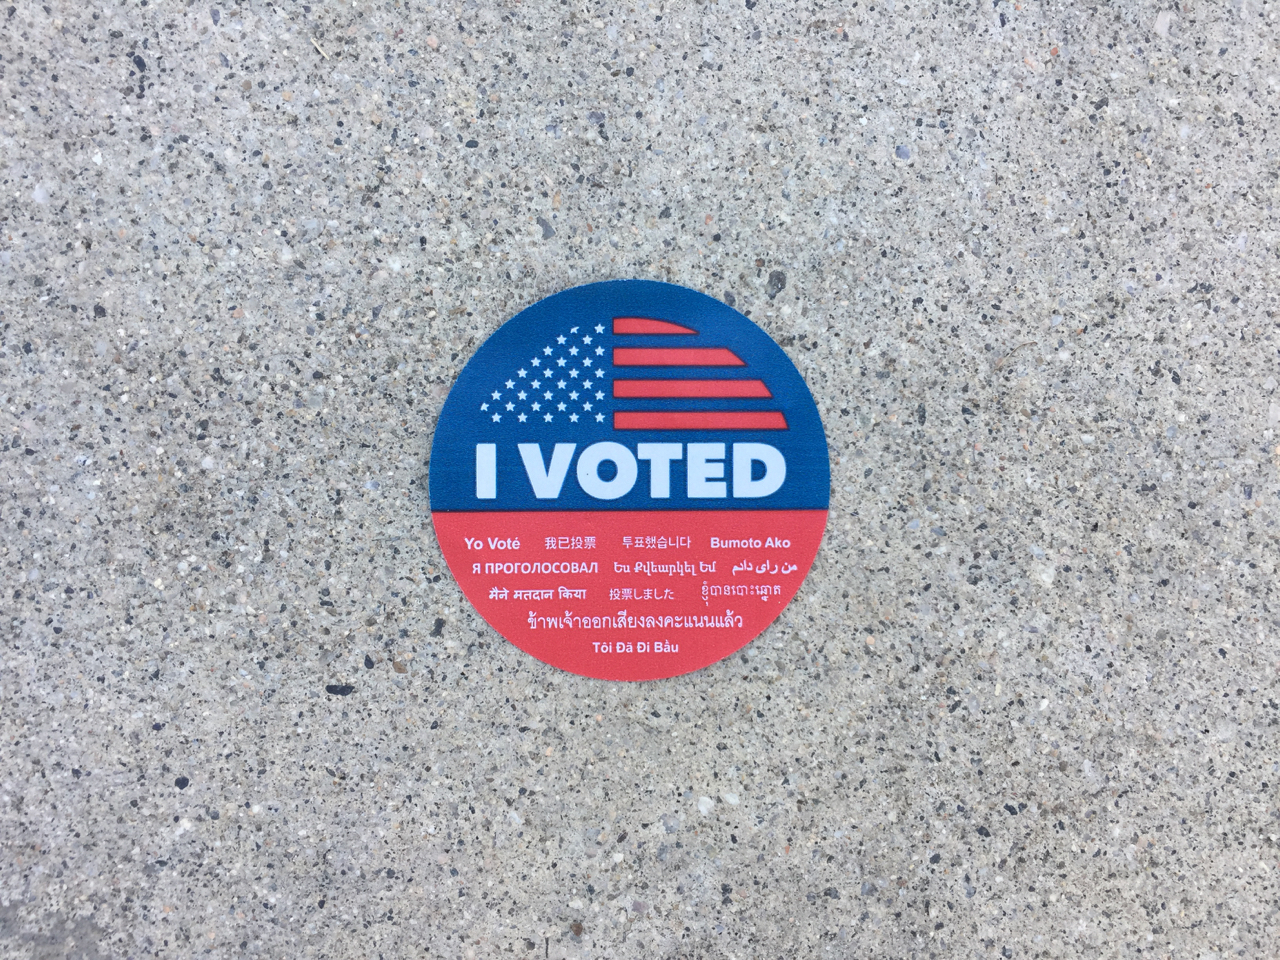 California's voter sticker on concrete